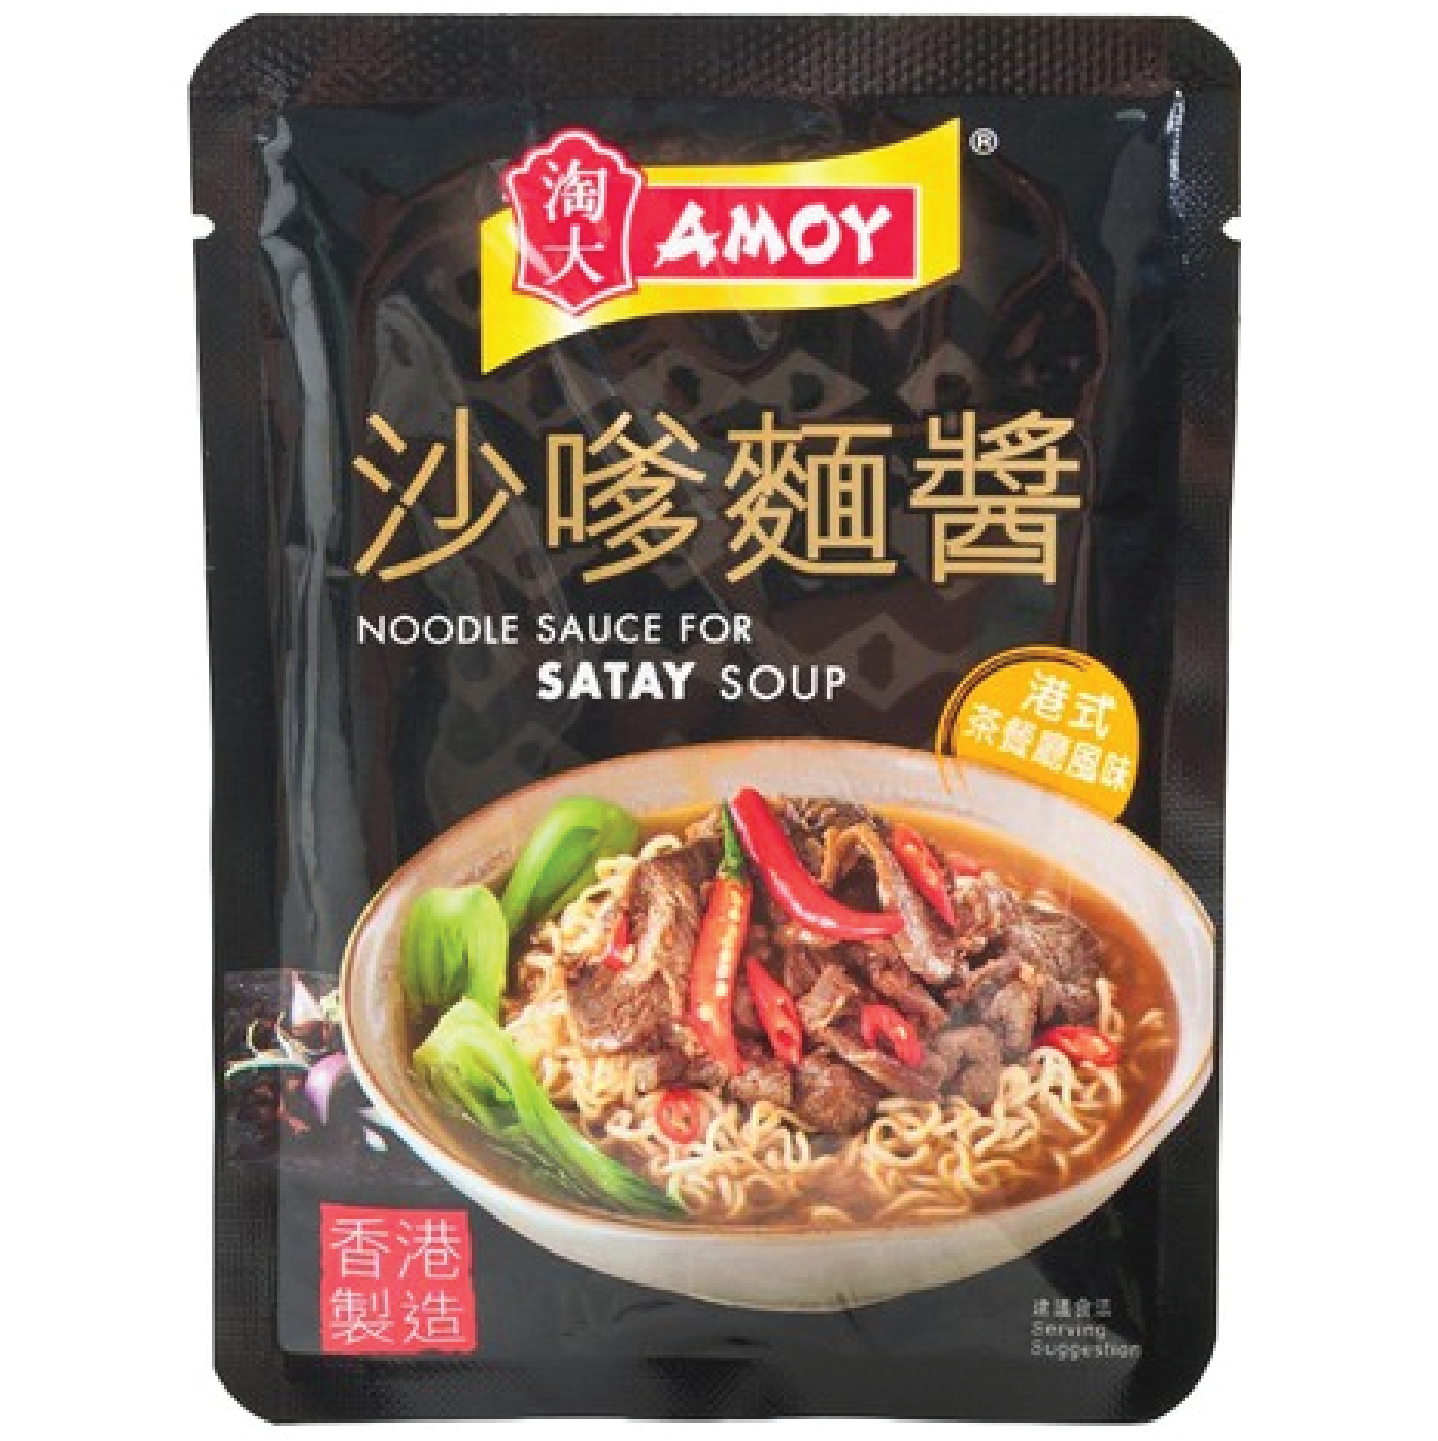 AMOY SATAY SOUP BASE FOR NOODLE SAUCE 60G 淘大 沙嗲麵醬 60G